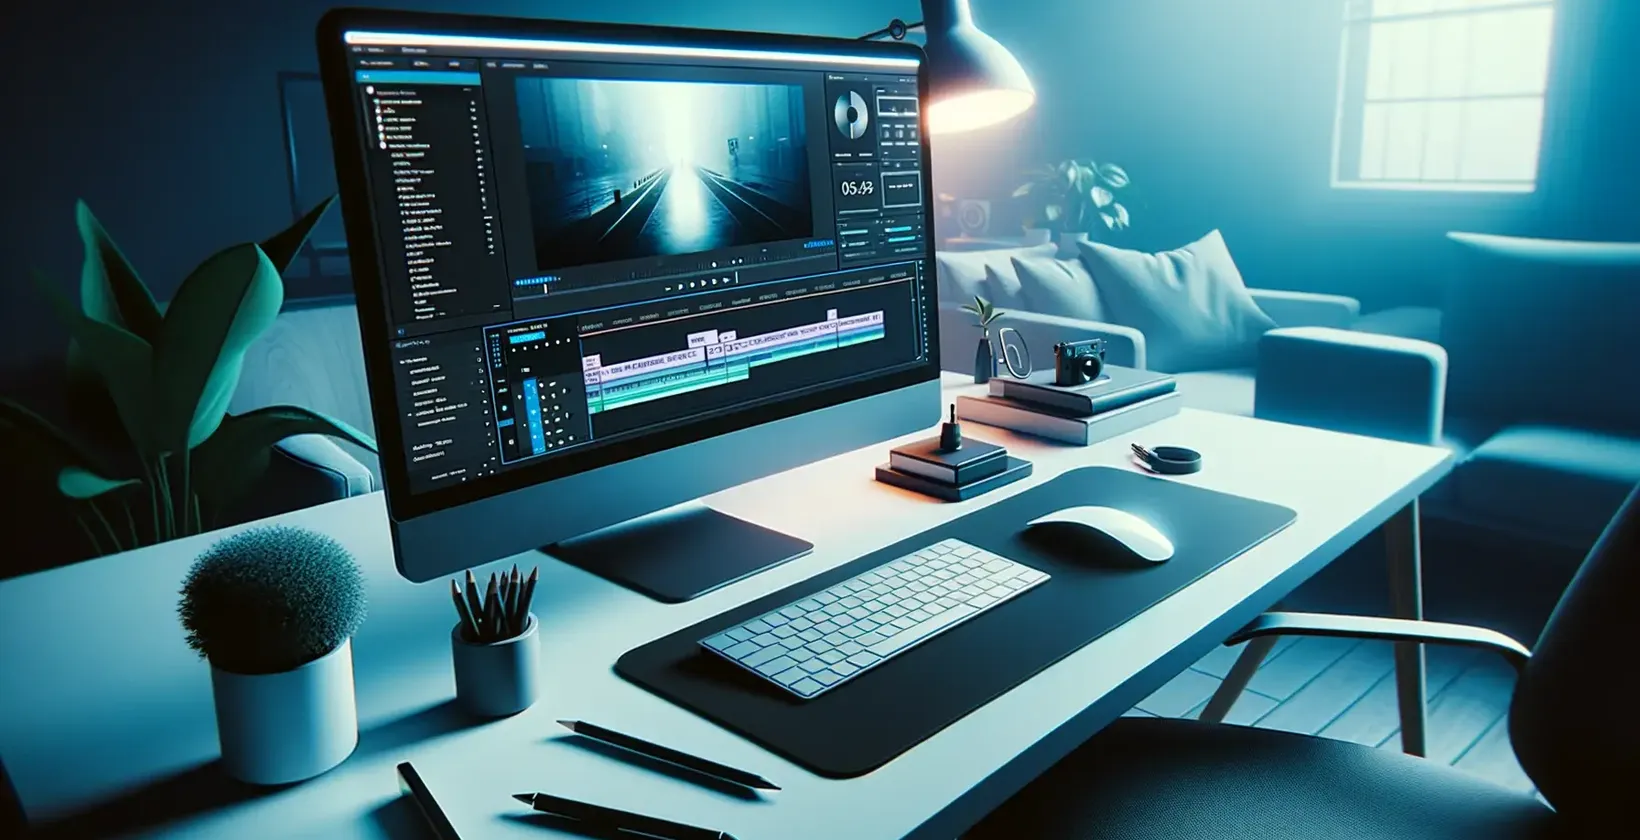 Szöveg hozzáadása a videóhoz a Adobe After Effects segítségével, amelyet egy elegáns, kék fénnyel ellátott szerkesztési munkaterület illusztrál.